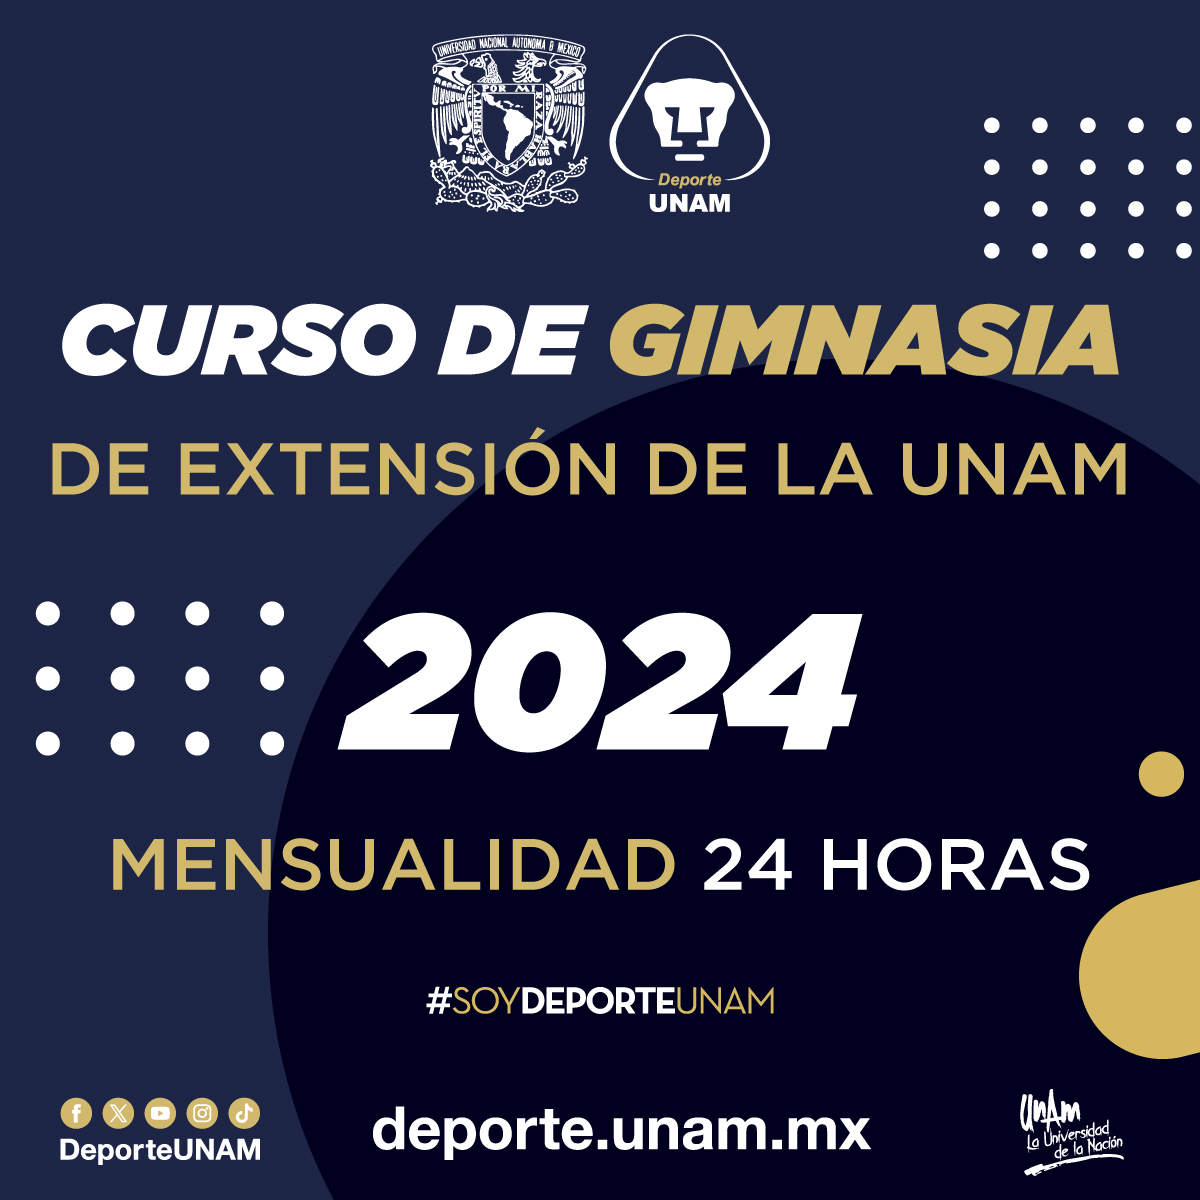 CURSO DE GIMNASIA DE EXTENSIÓN DE LA UNAM 2024 MENSUALIDAD 24 HORAS